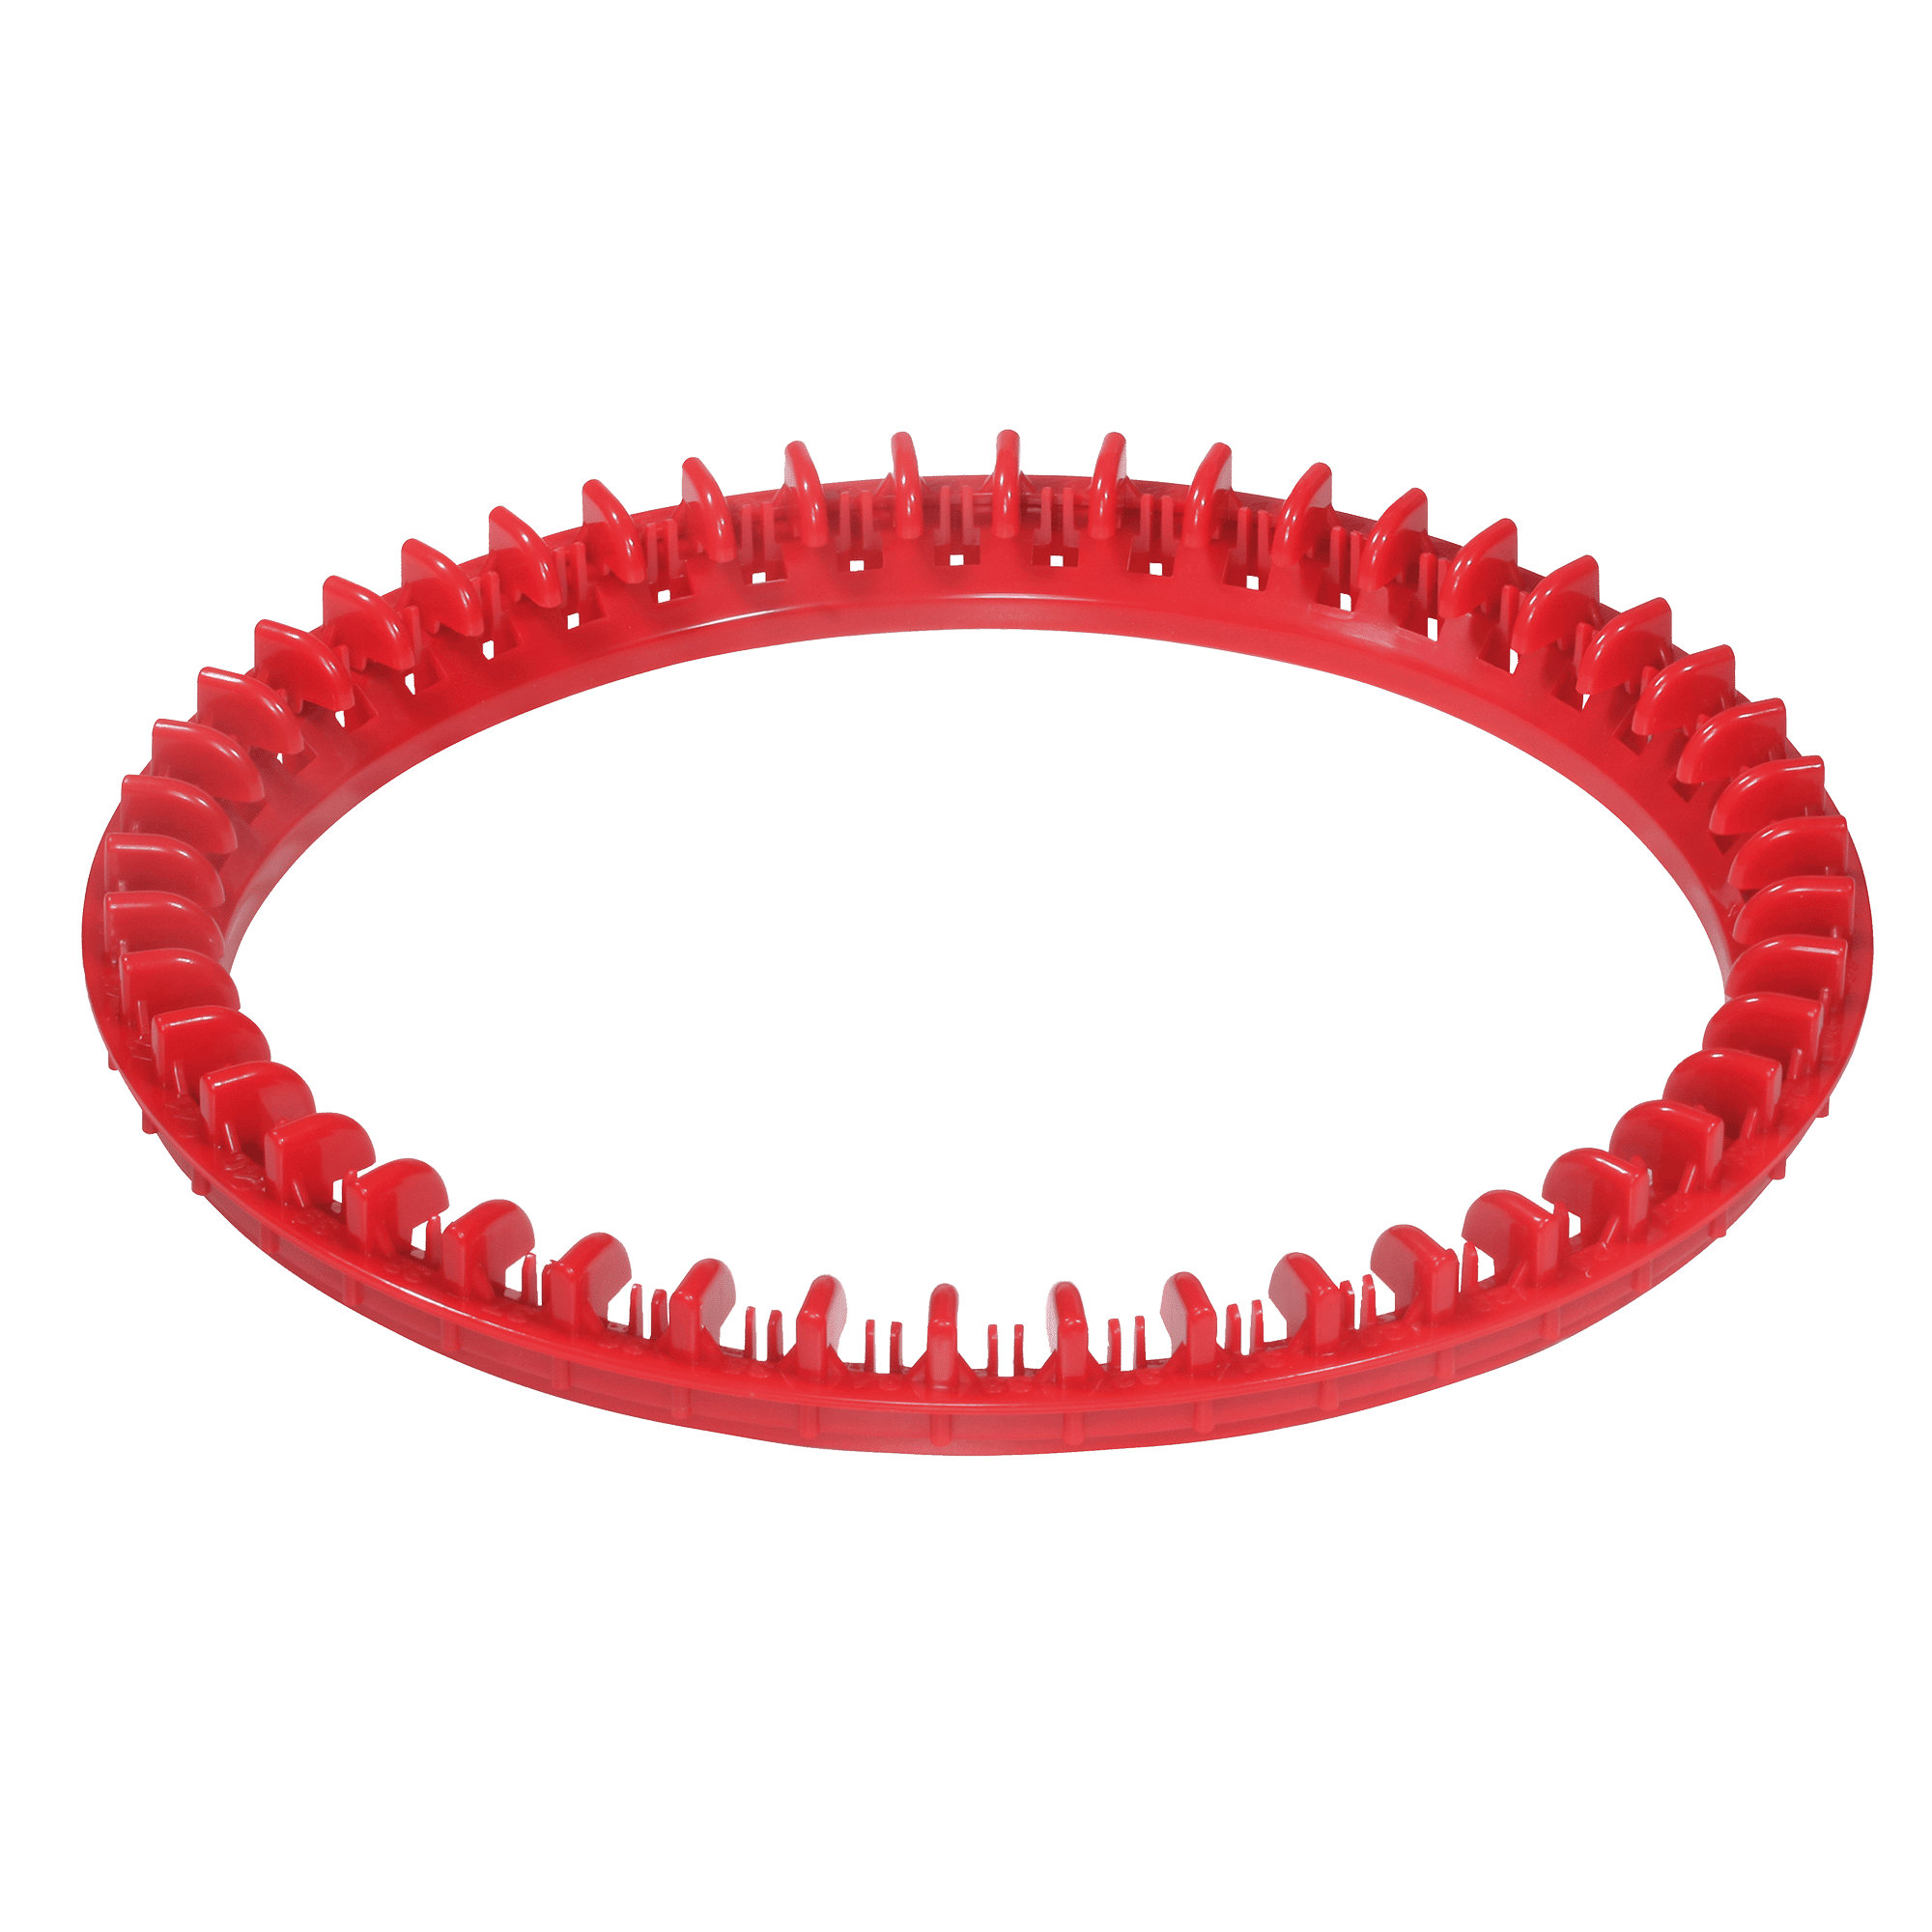 Strickmaschine addiExpress Roter Ring – Ersatzteil für die addiExpress Kingsize Strickmaschine